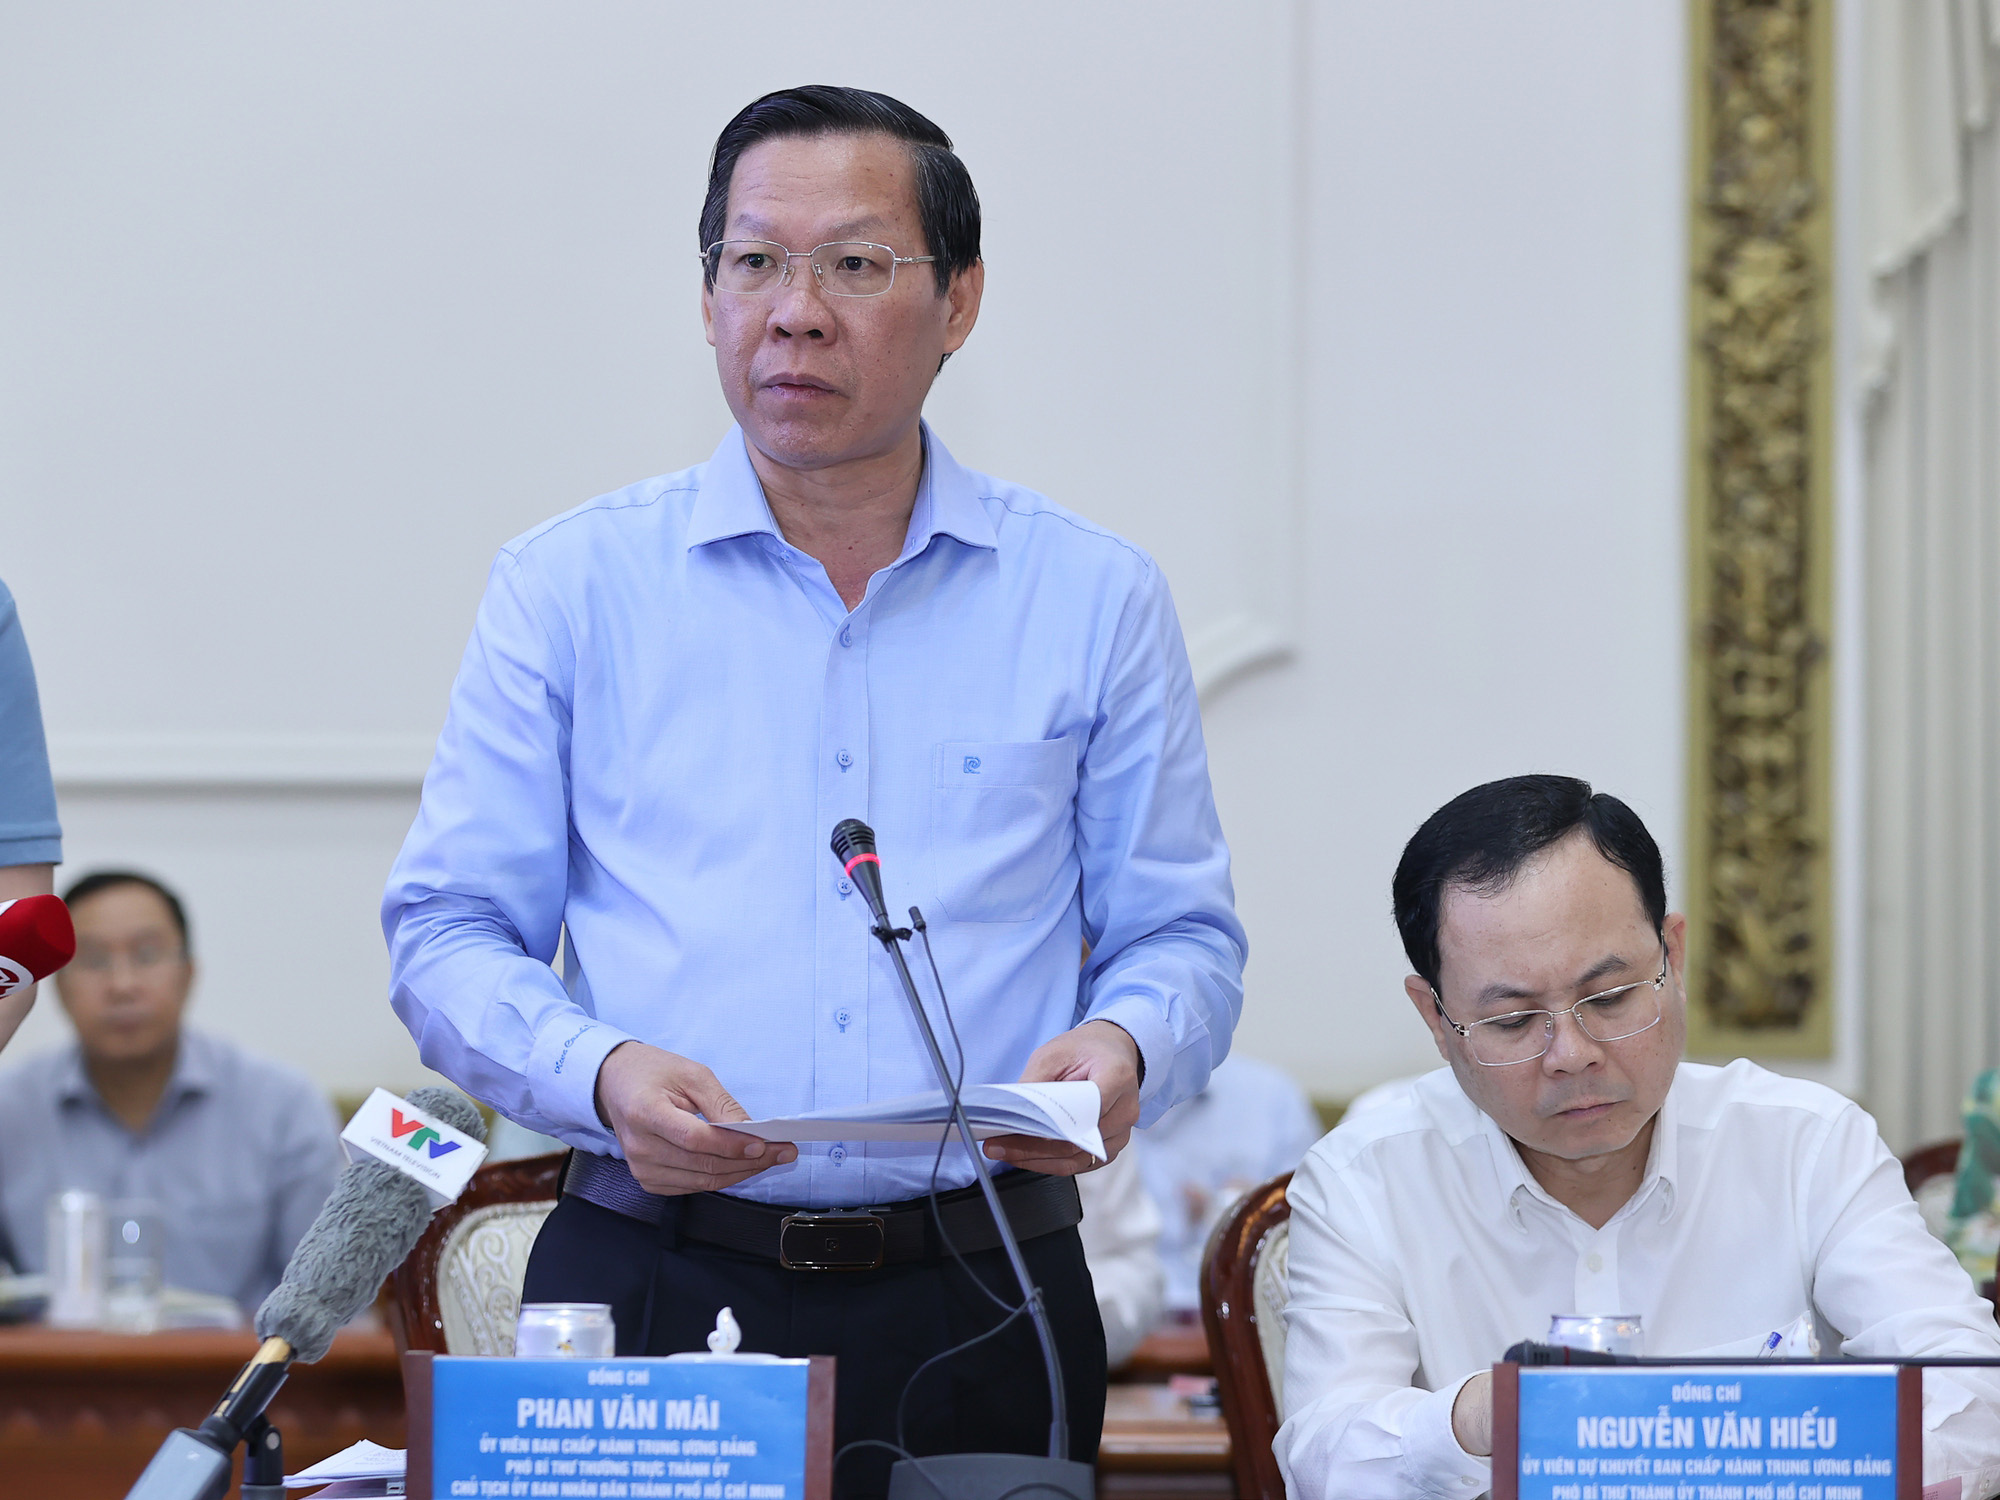 Chủ tịch UBND TP.Hồ Chí Minh Phan Văn Mãi báo cáo tại cuộc họp (Ảnh: VGP/Nhật Bắc).